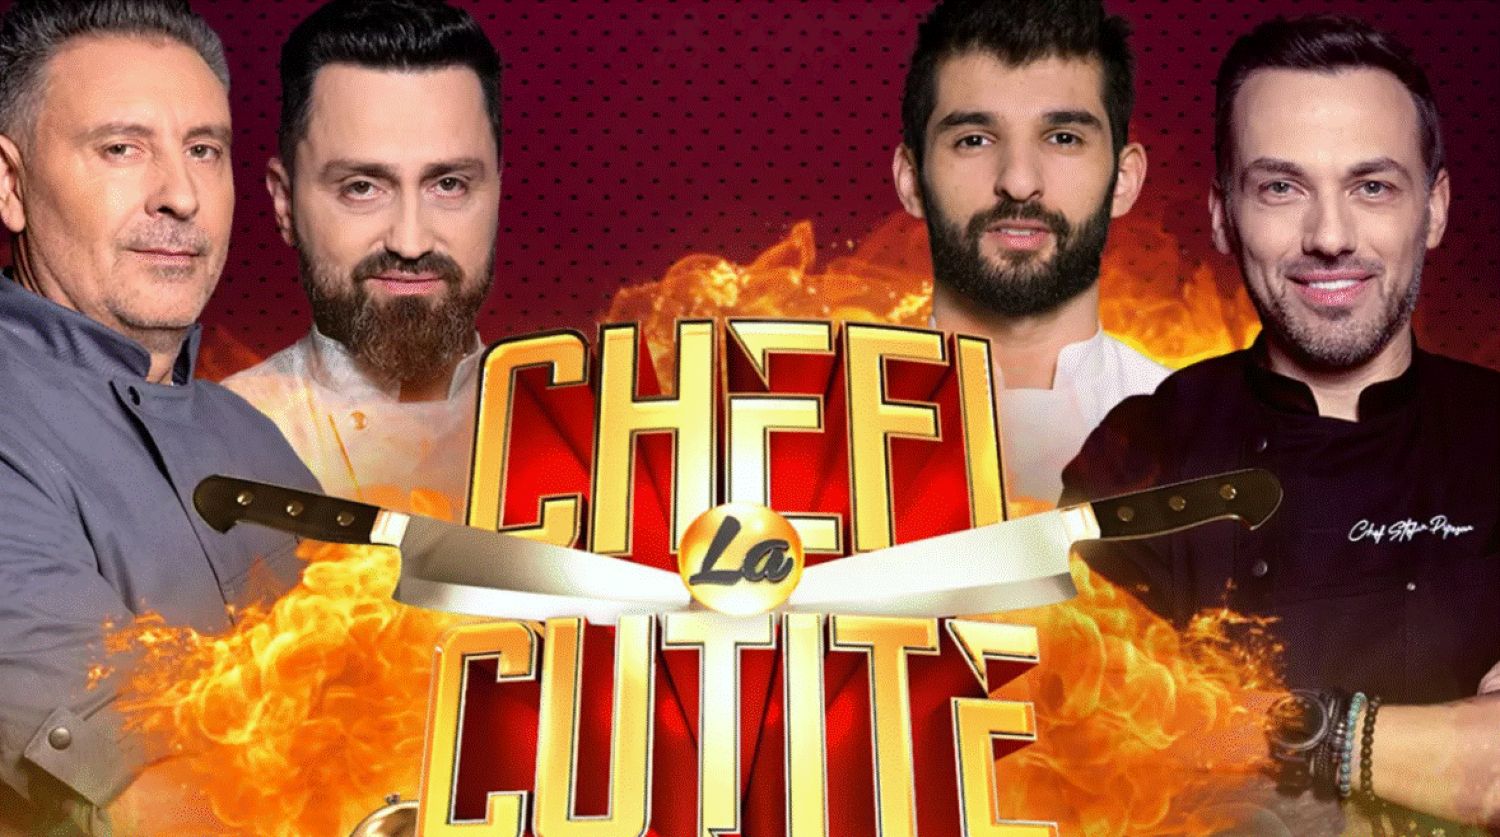 Ce se întâmplă în noul sezon Chefi la cuțite. Au apărut primele imagini